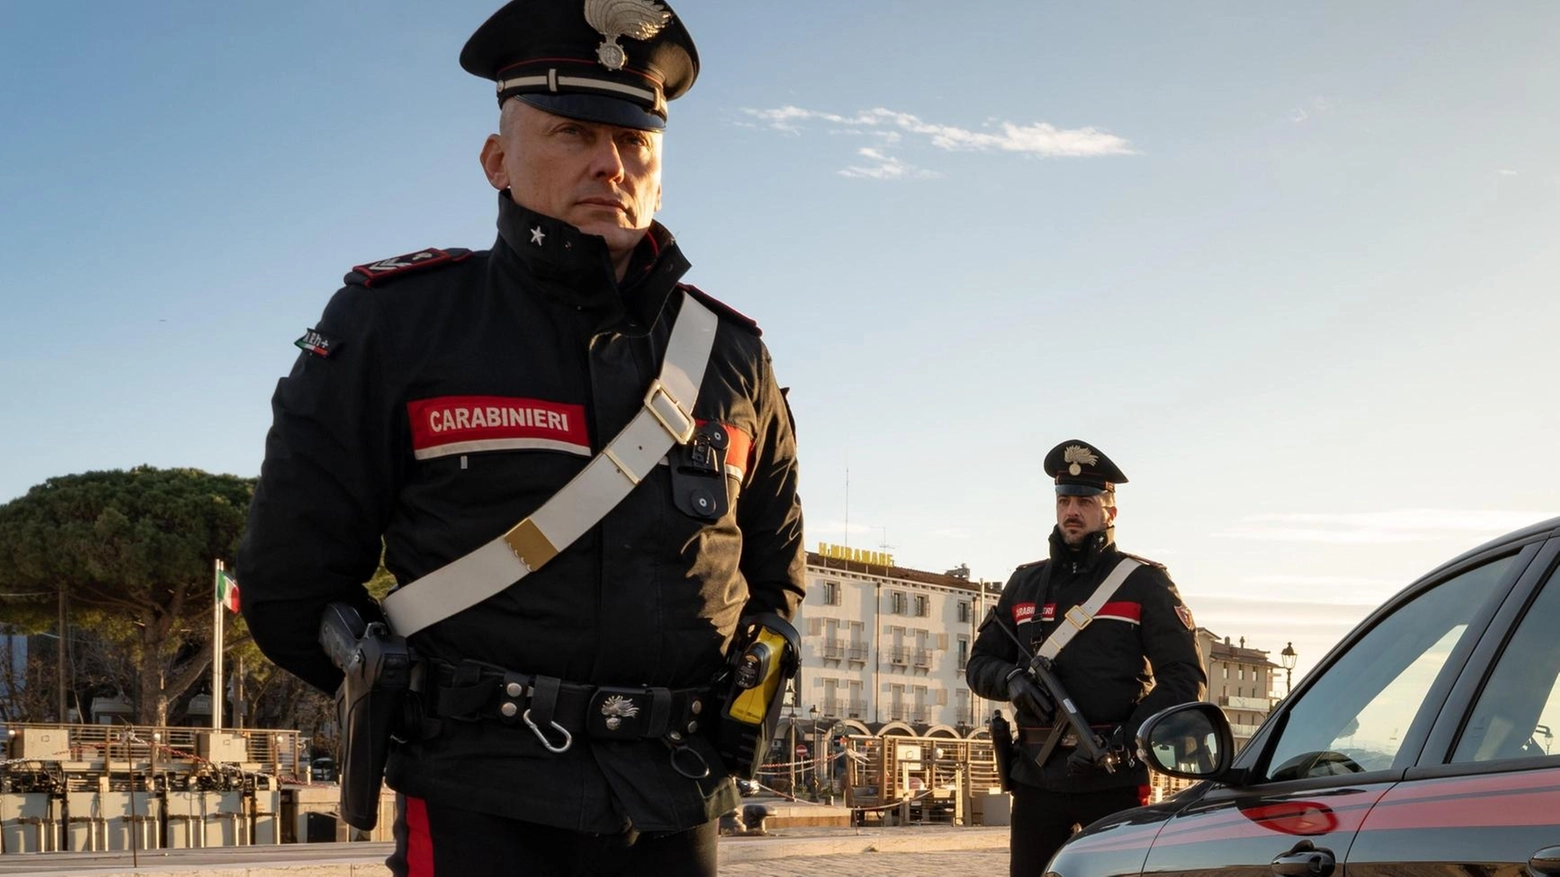 Carabinieri di Pisa e Volterra denunciano due persone per porto abusivo di coltello e guida in stato di ebbrezza, ritirando le patenti. Controlli per la sicurezza stradale in atto.